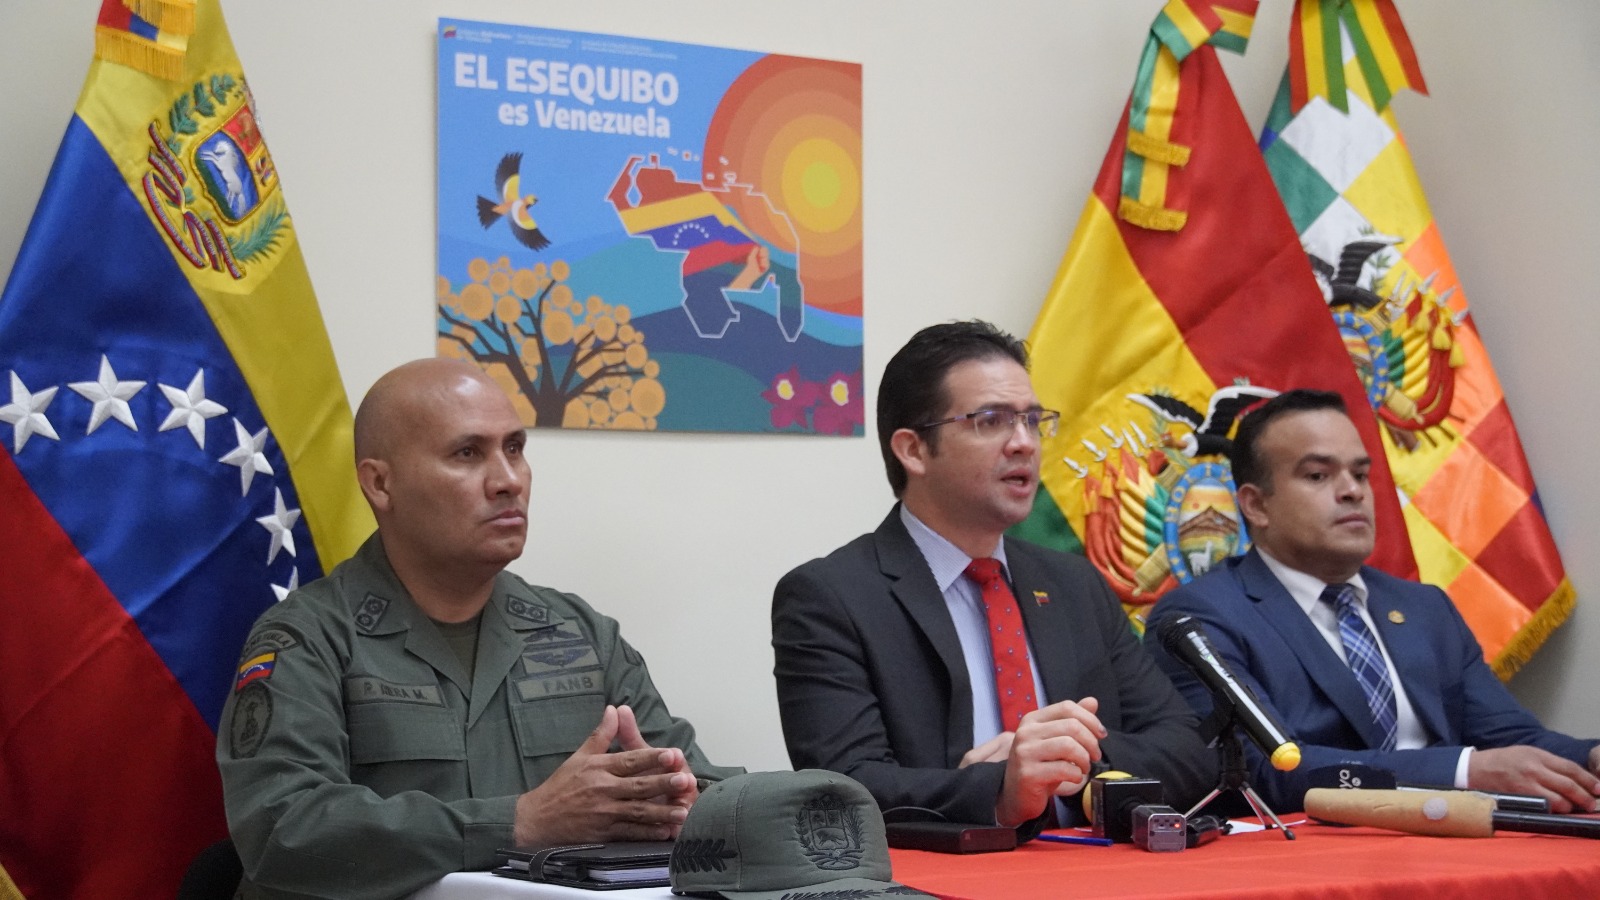 Embajada de Venezuela en Bolivia concede rueda de prensa para abordar tema del Esequibo